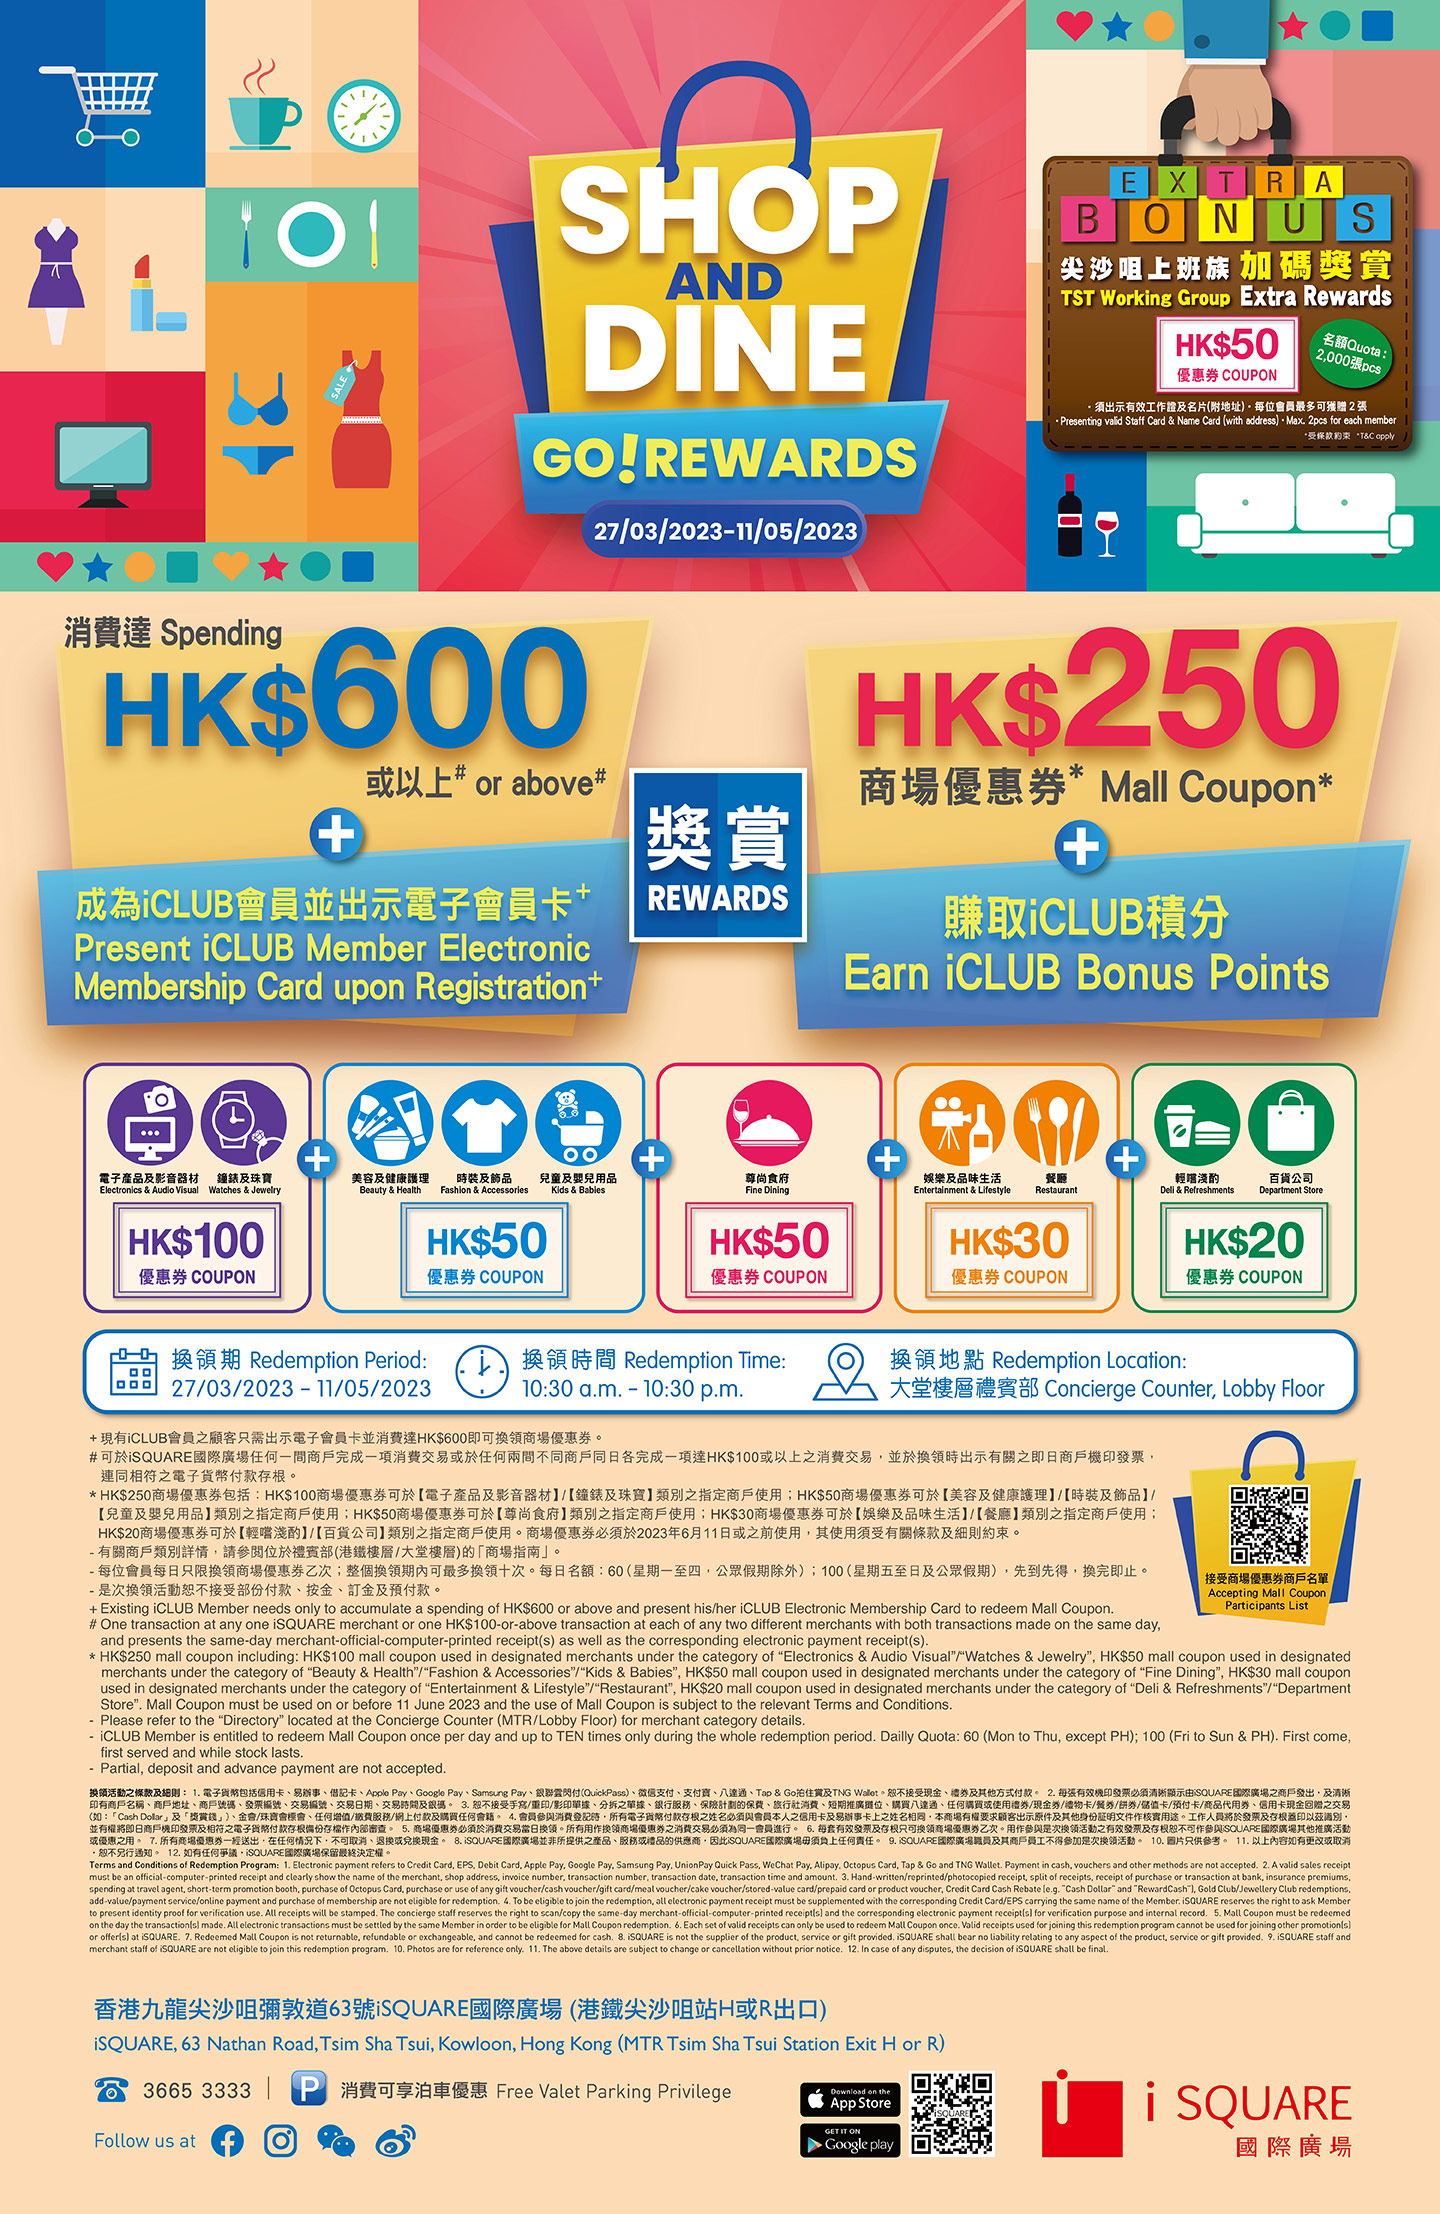 【Shop & Dine GO! Rewards】消費滿HK$600即可換領「HK$250商場優惠券」+【尖沙咀上班族】可獲加碼獎賞「HK$50商場優惠券」